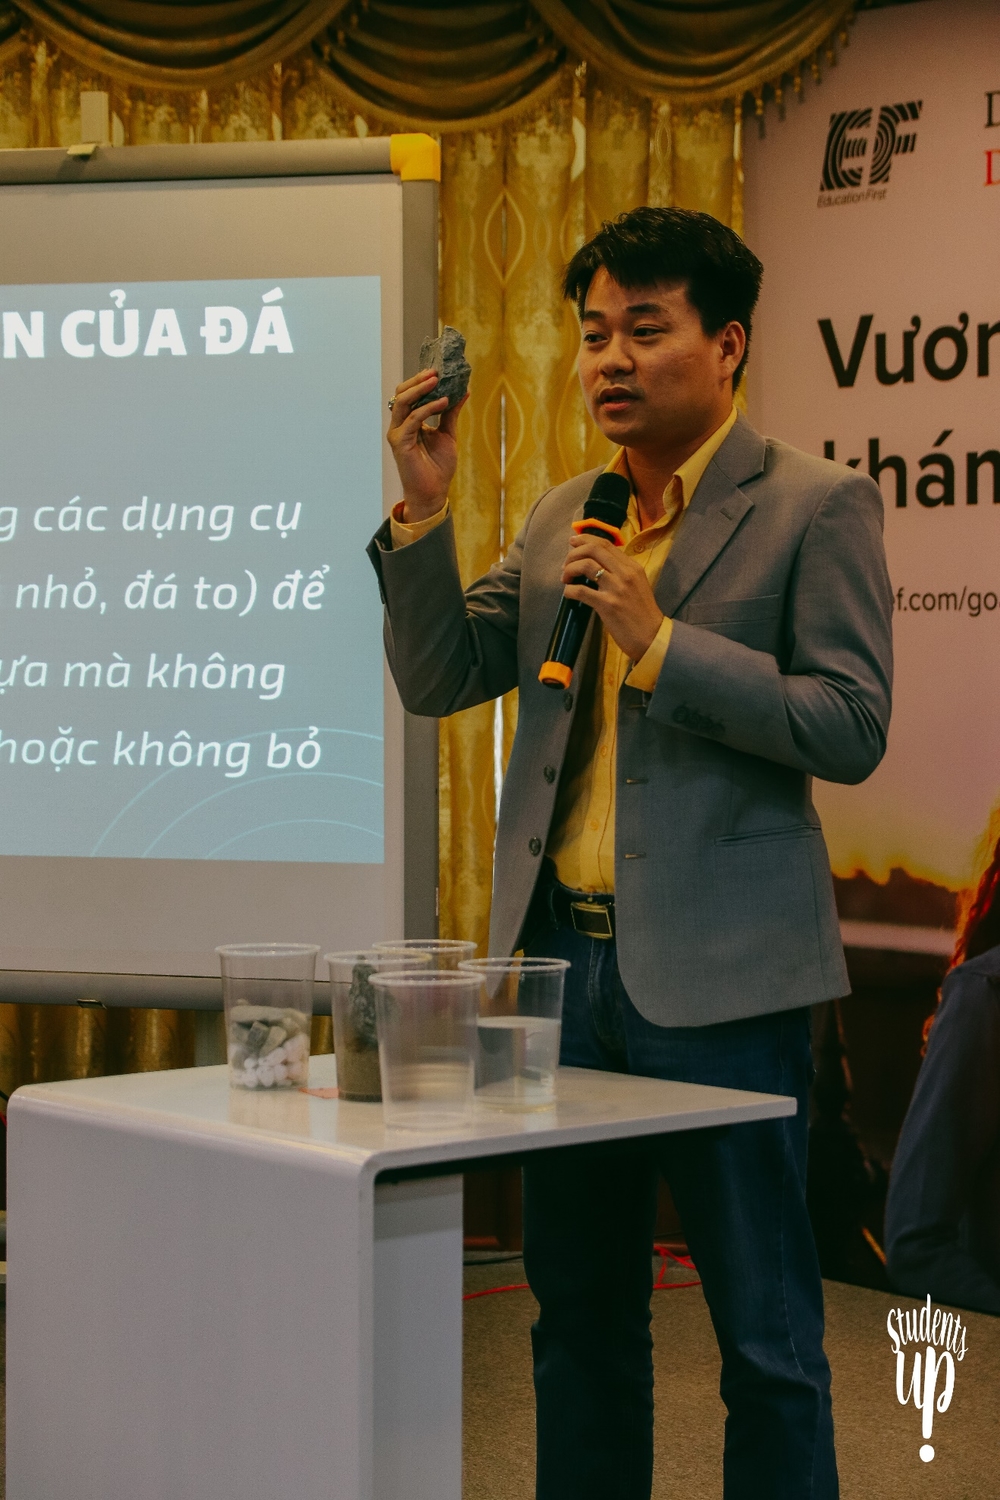  
CEO Thịnh Duy Khiêm.